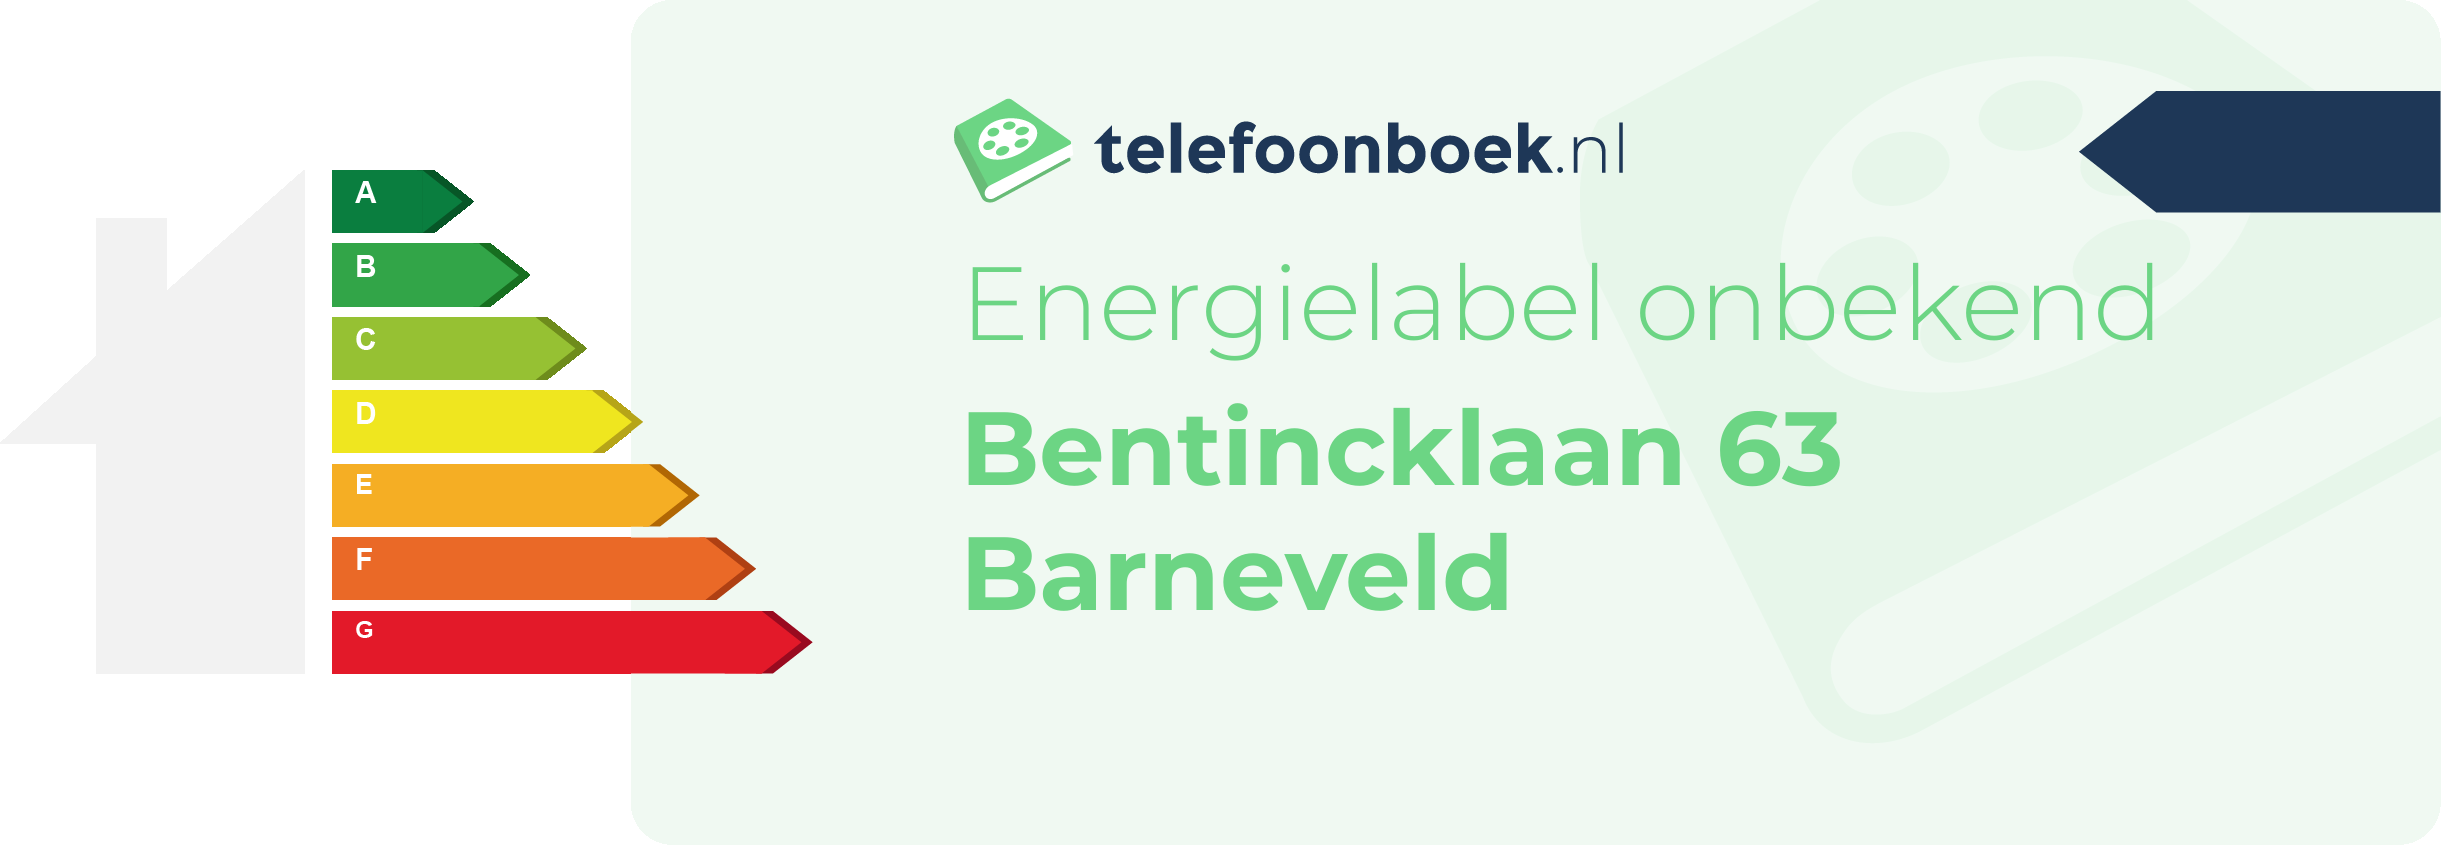 Energielabel Bentincklaan 63 Barneveld